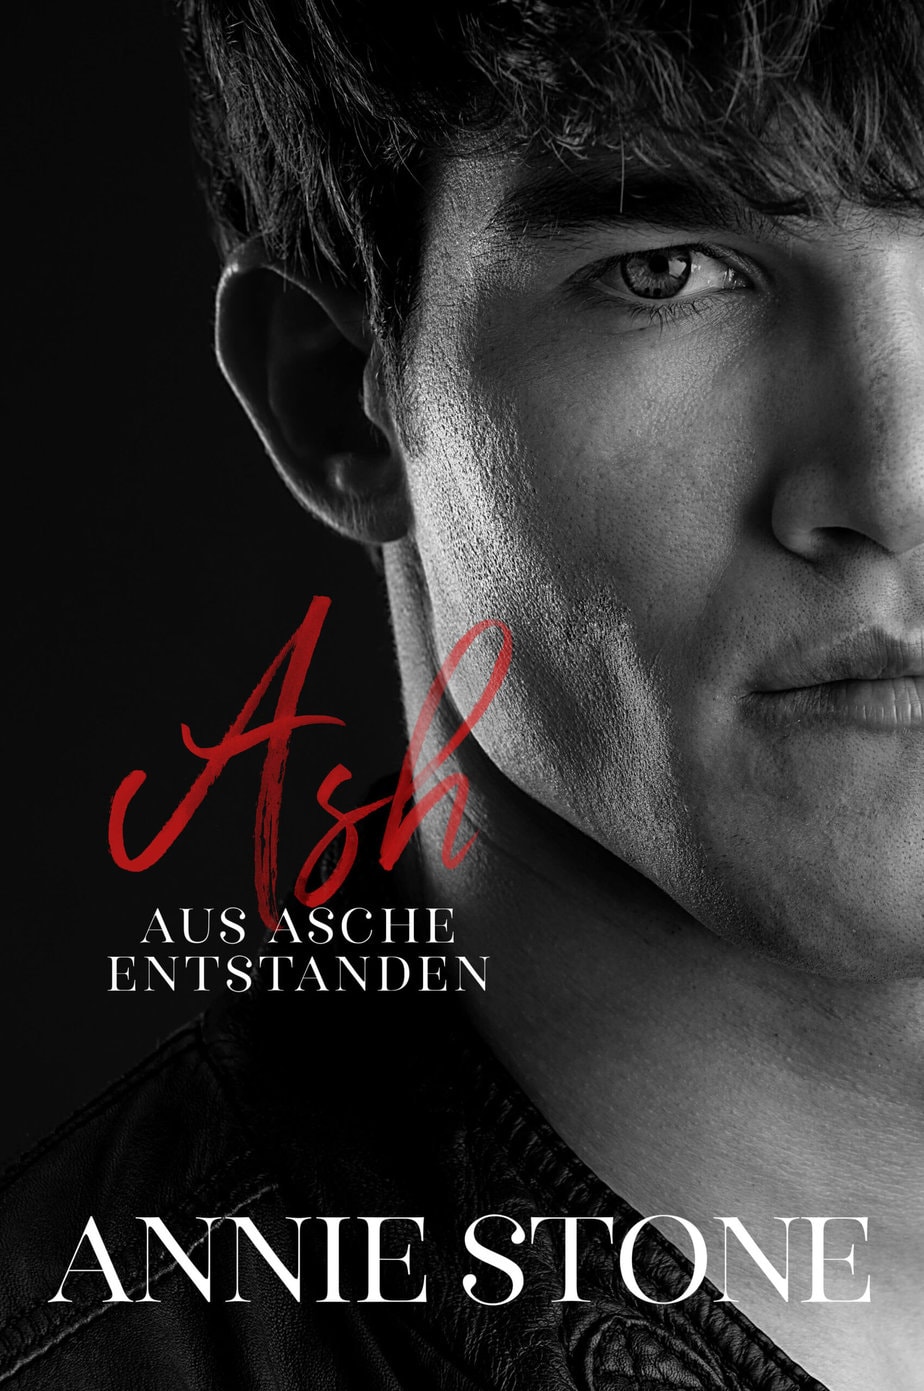 E-Book-Cover zu Ash - Aus Asche entstanden: Mann in schwarz-weiß mit stechendem Blick